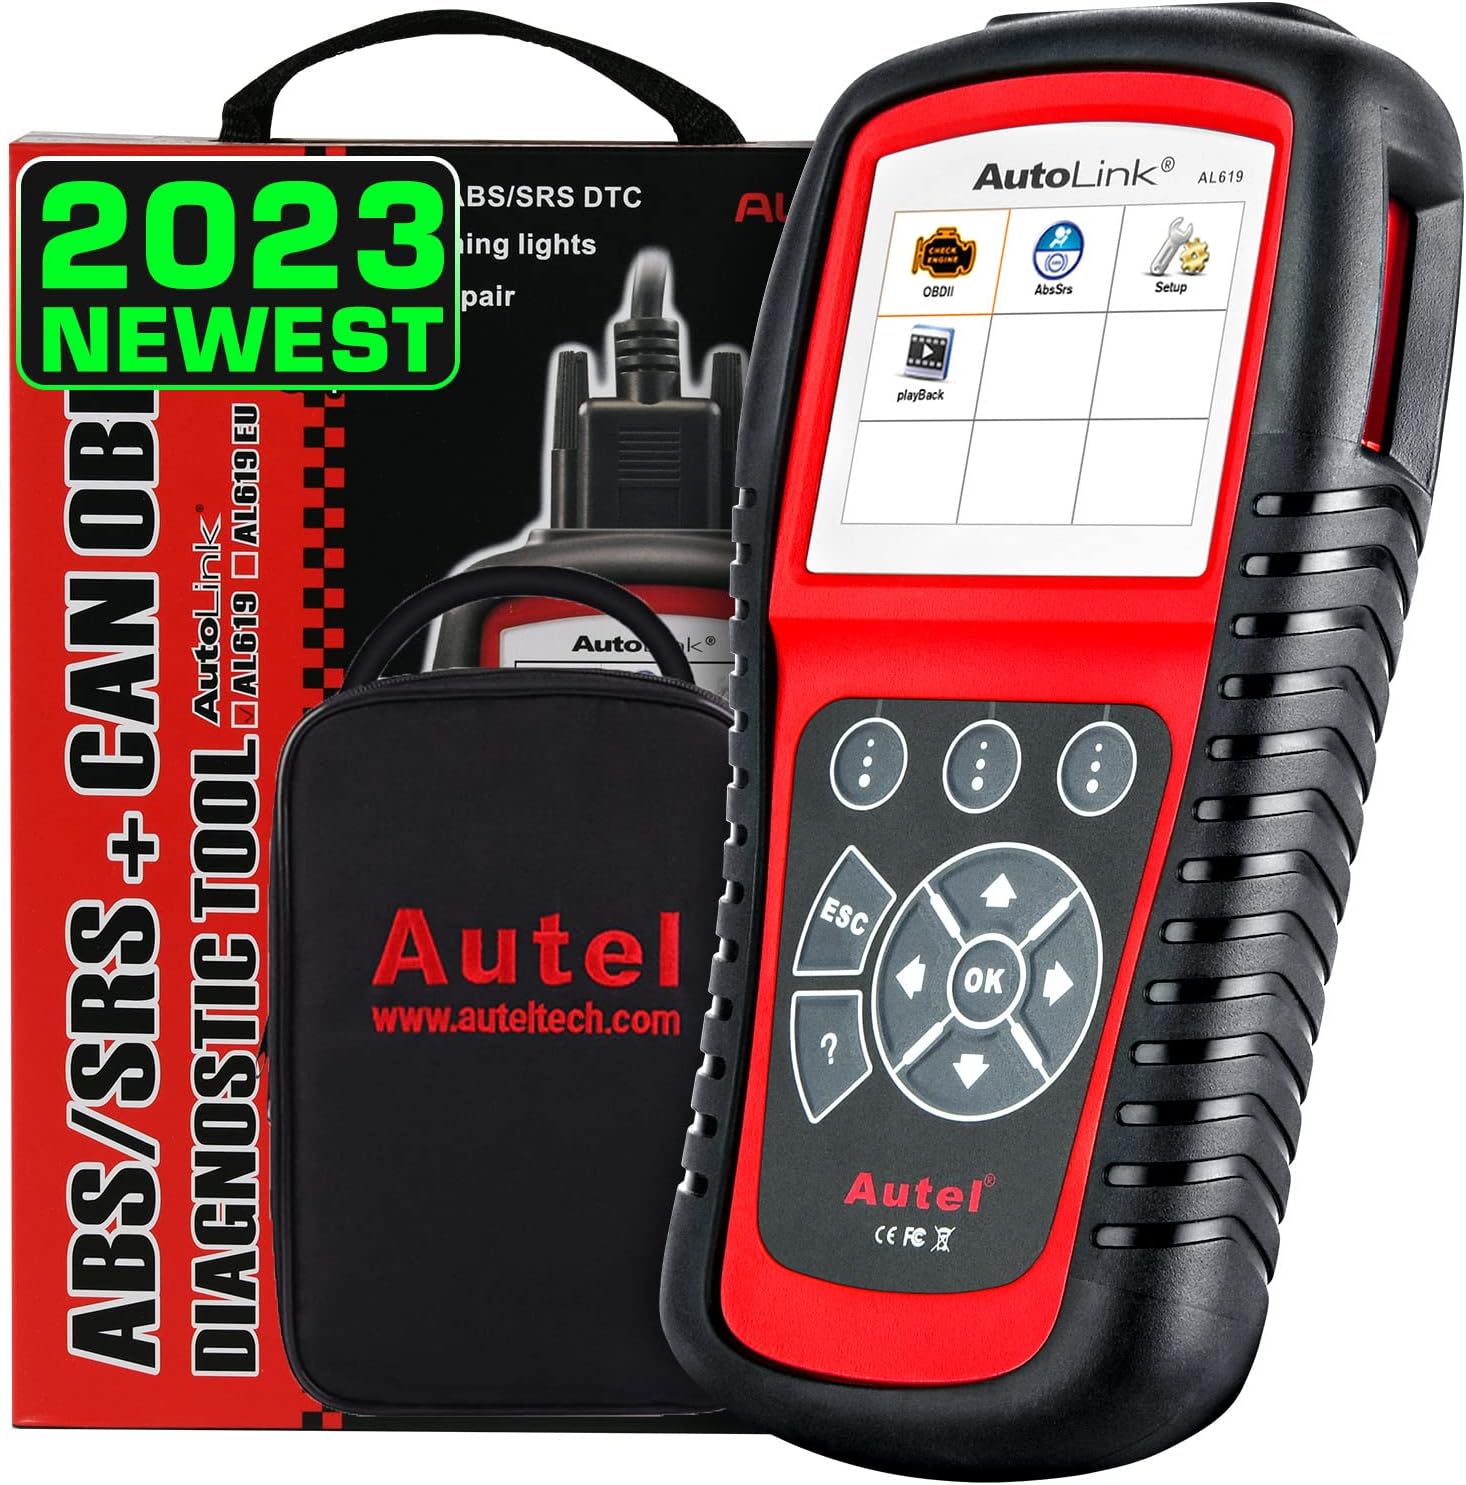 Autel AutoLink AL619 Scanner, 2023 Newest Car ABS SRS [...]